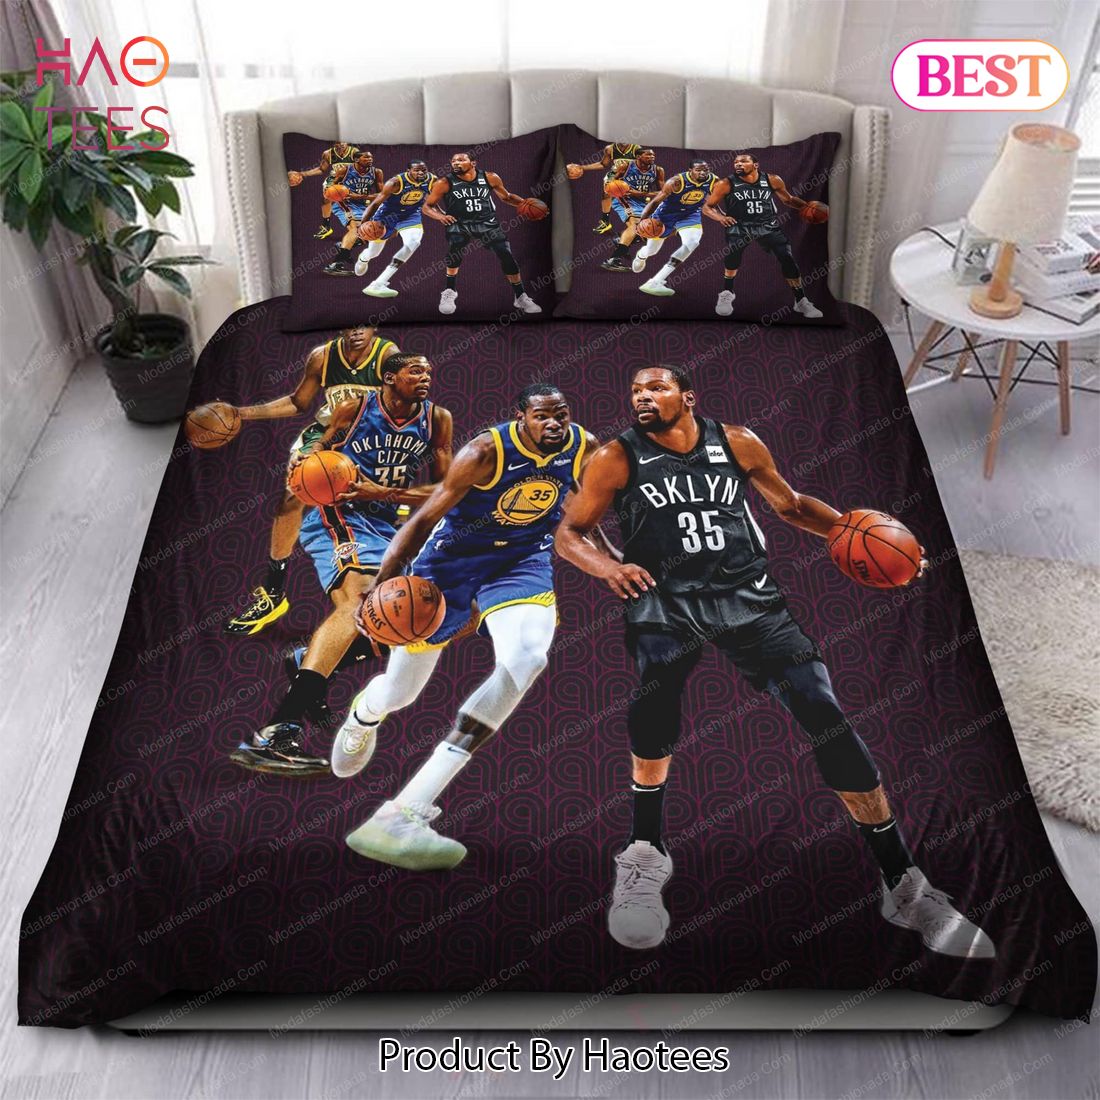 Buy Kevin Durant Brooklyn Nets NBA 151 Bedding Sets Bed Sets, Bedroom Sets, Comforter Sets, Duvet Cover, Bedspread